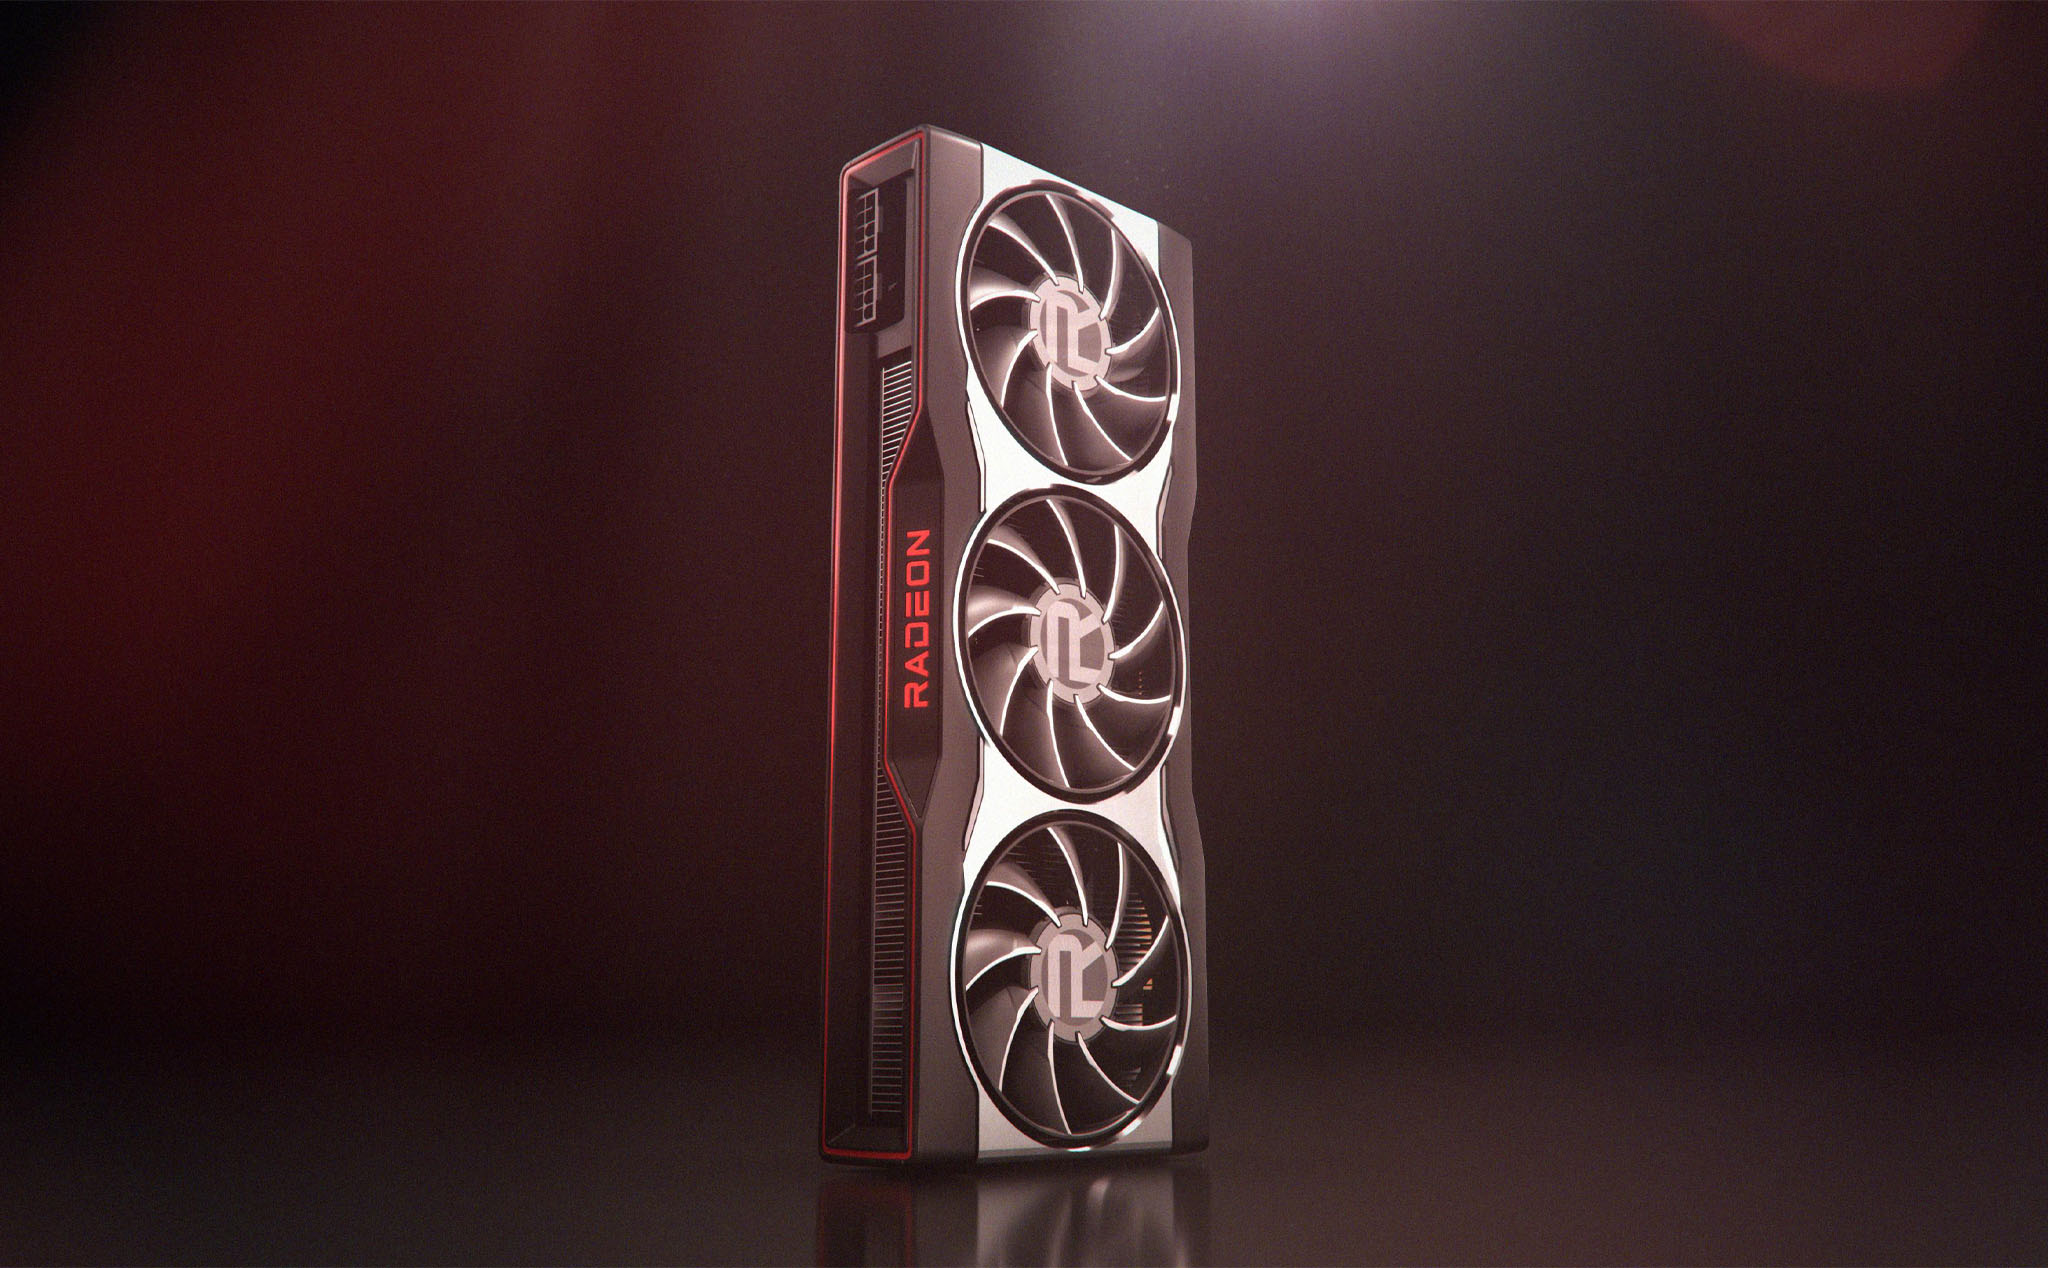 AMD hé lộ thiết kế card đồ họa Radeon RX 6000 Series, anh em nhìn thiết kế có quen không?